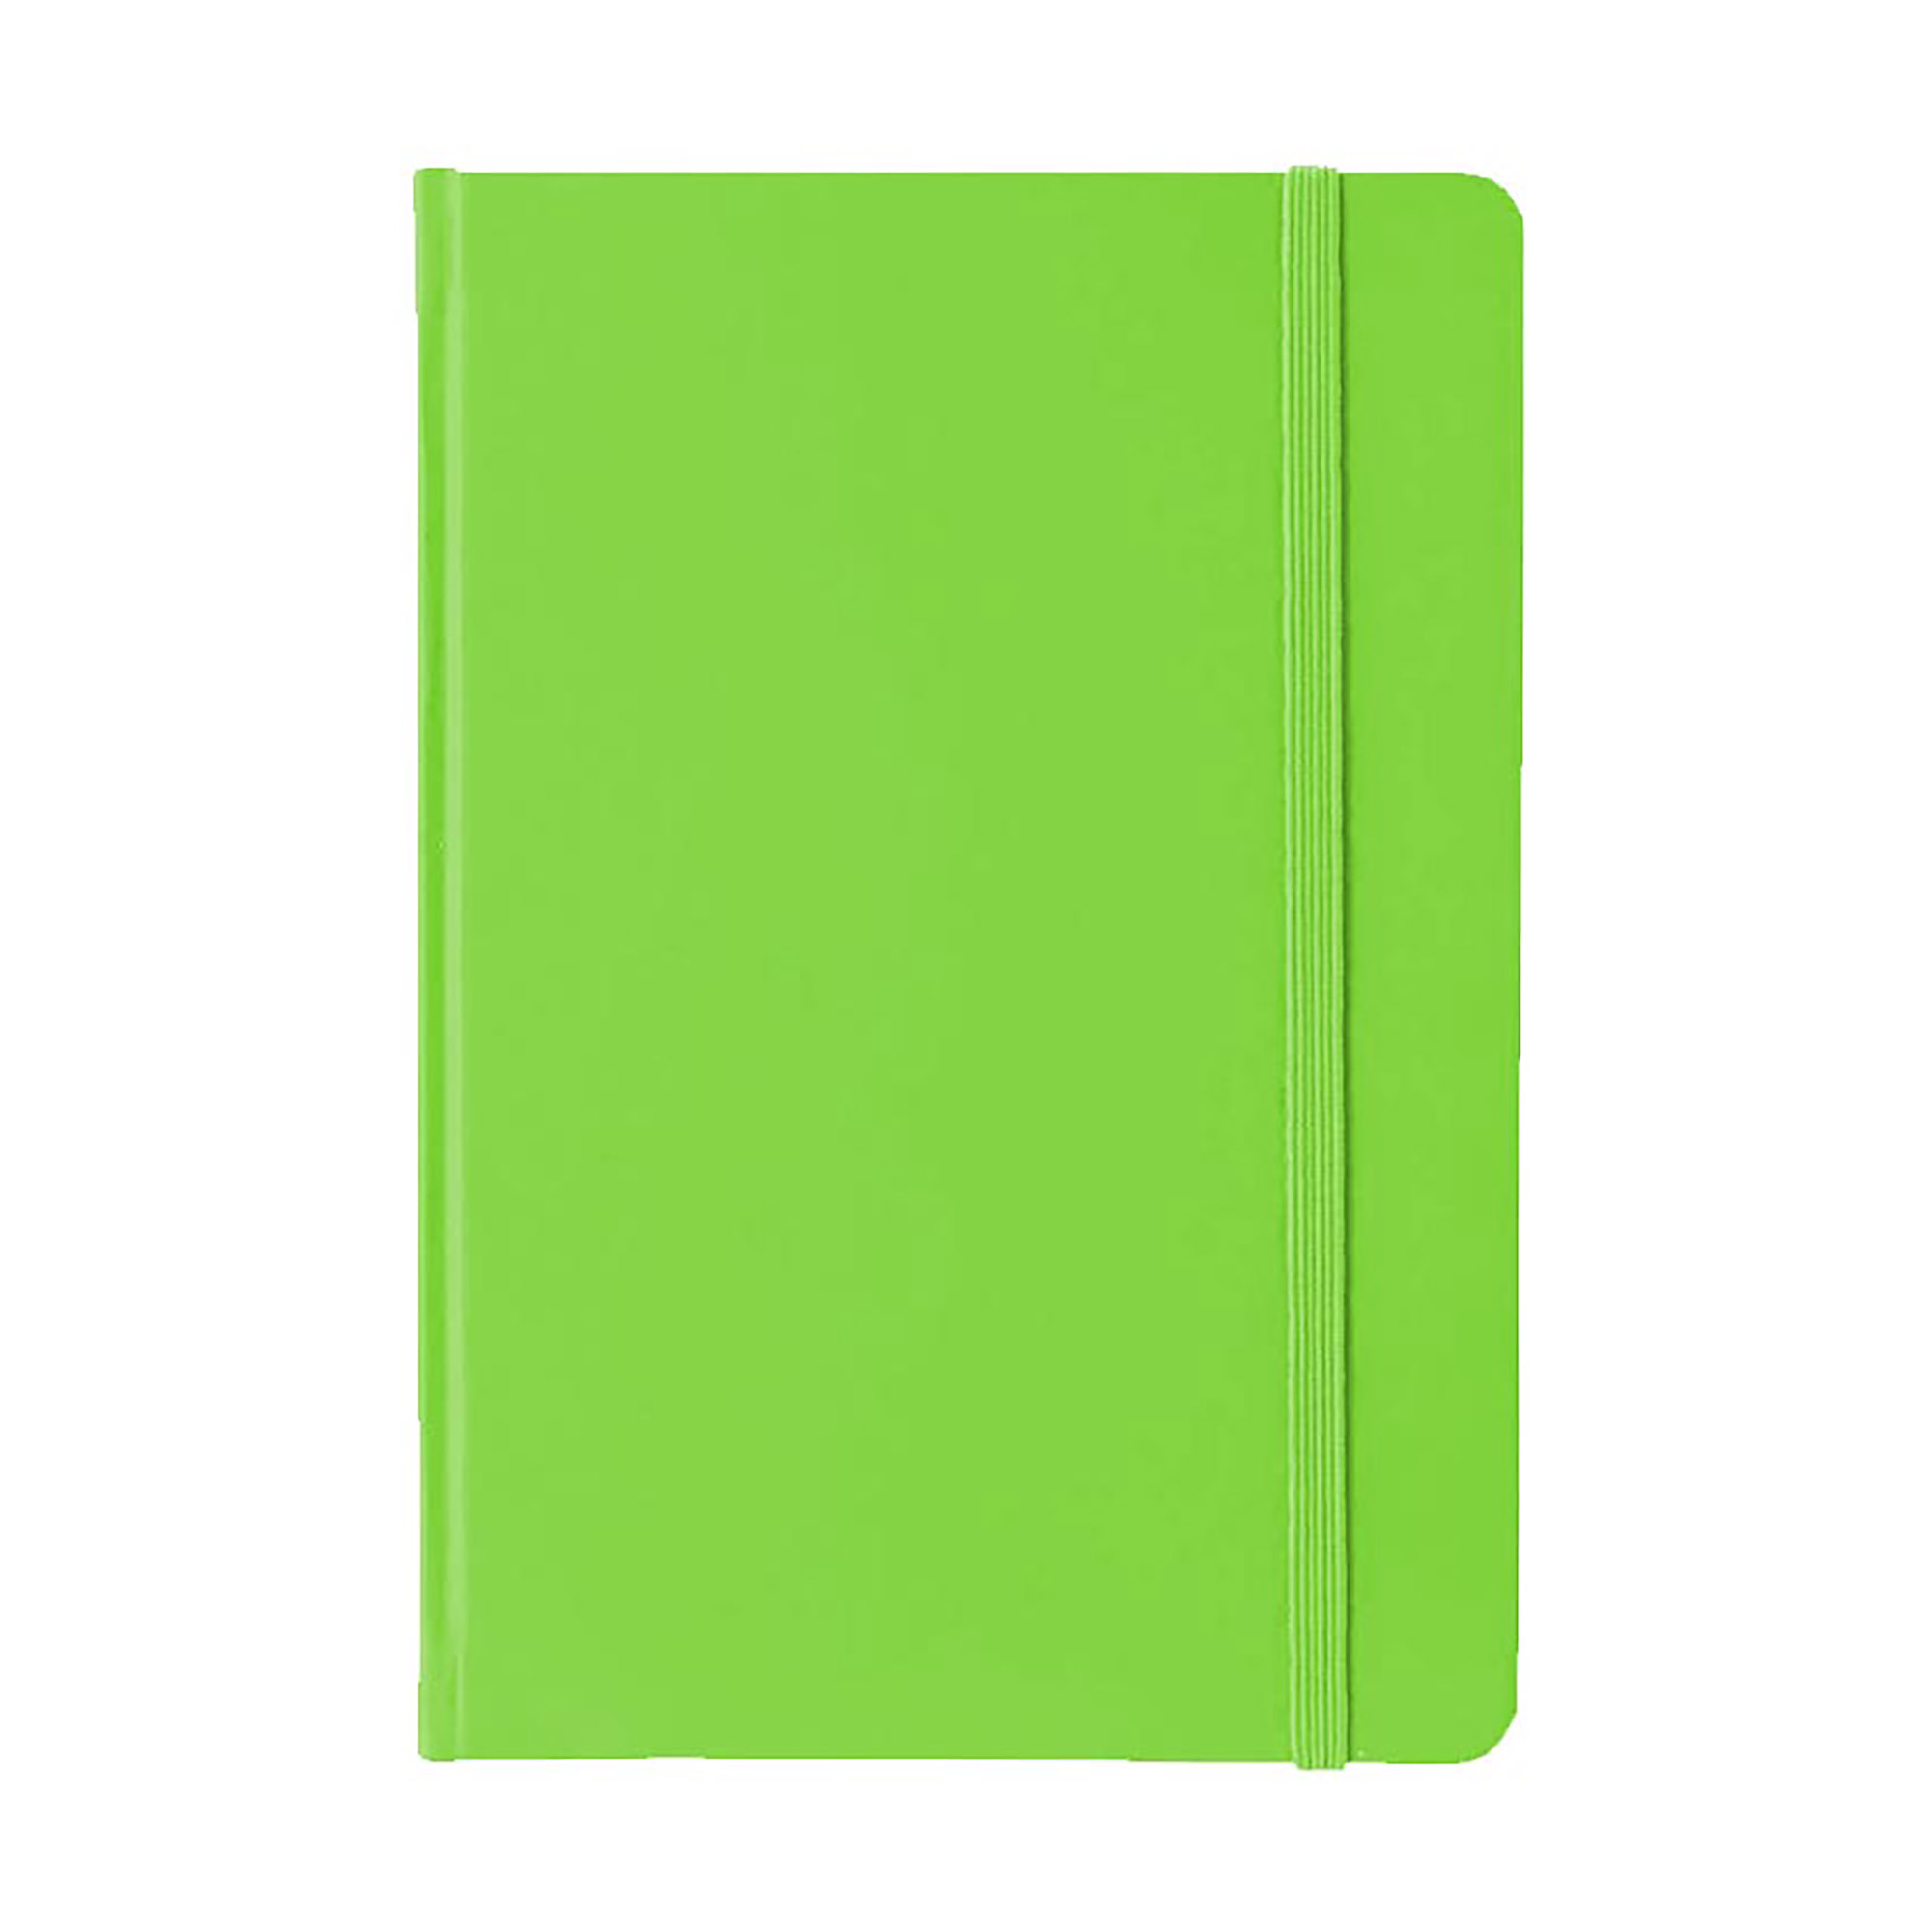 A5 PU Notebook